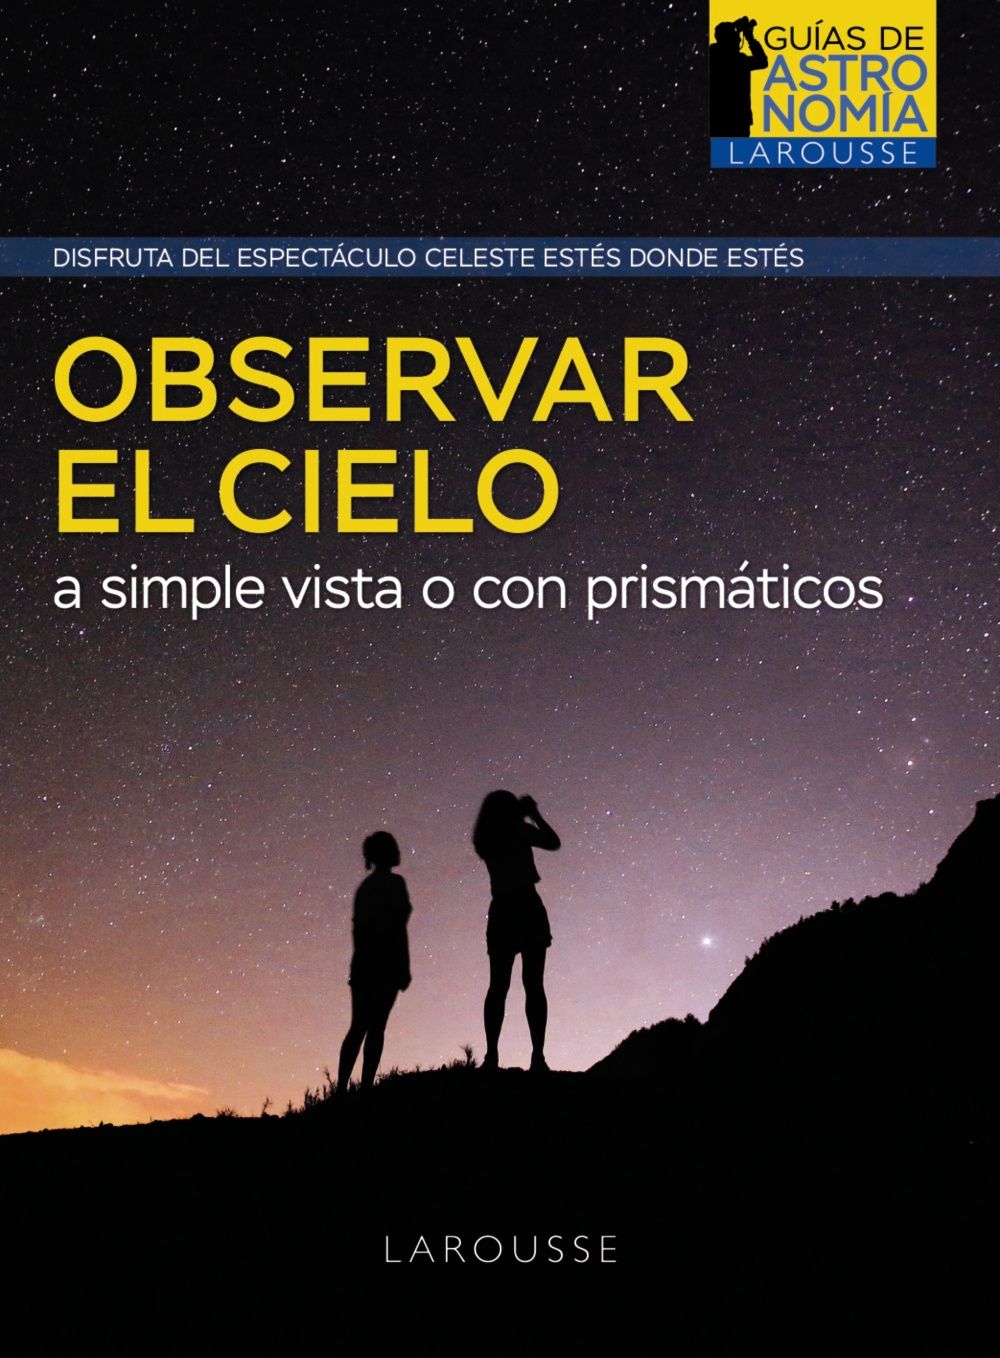 OBSERVAR-EL-CIELO-A-SIMPLE-VISTA-O-CON-PRISMATICOS.jpg